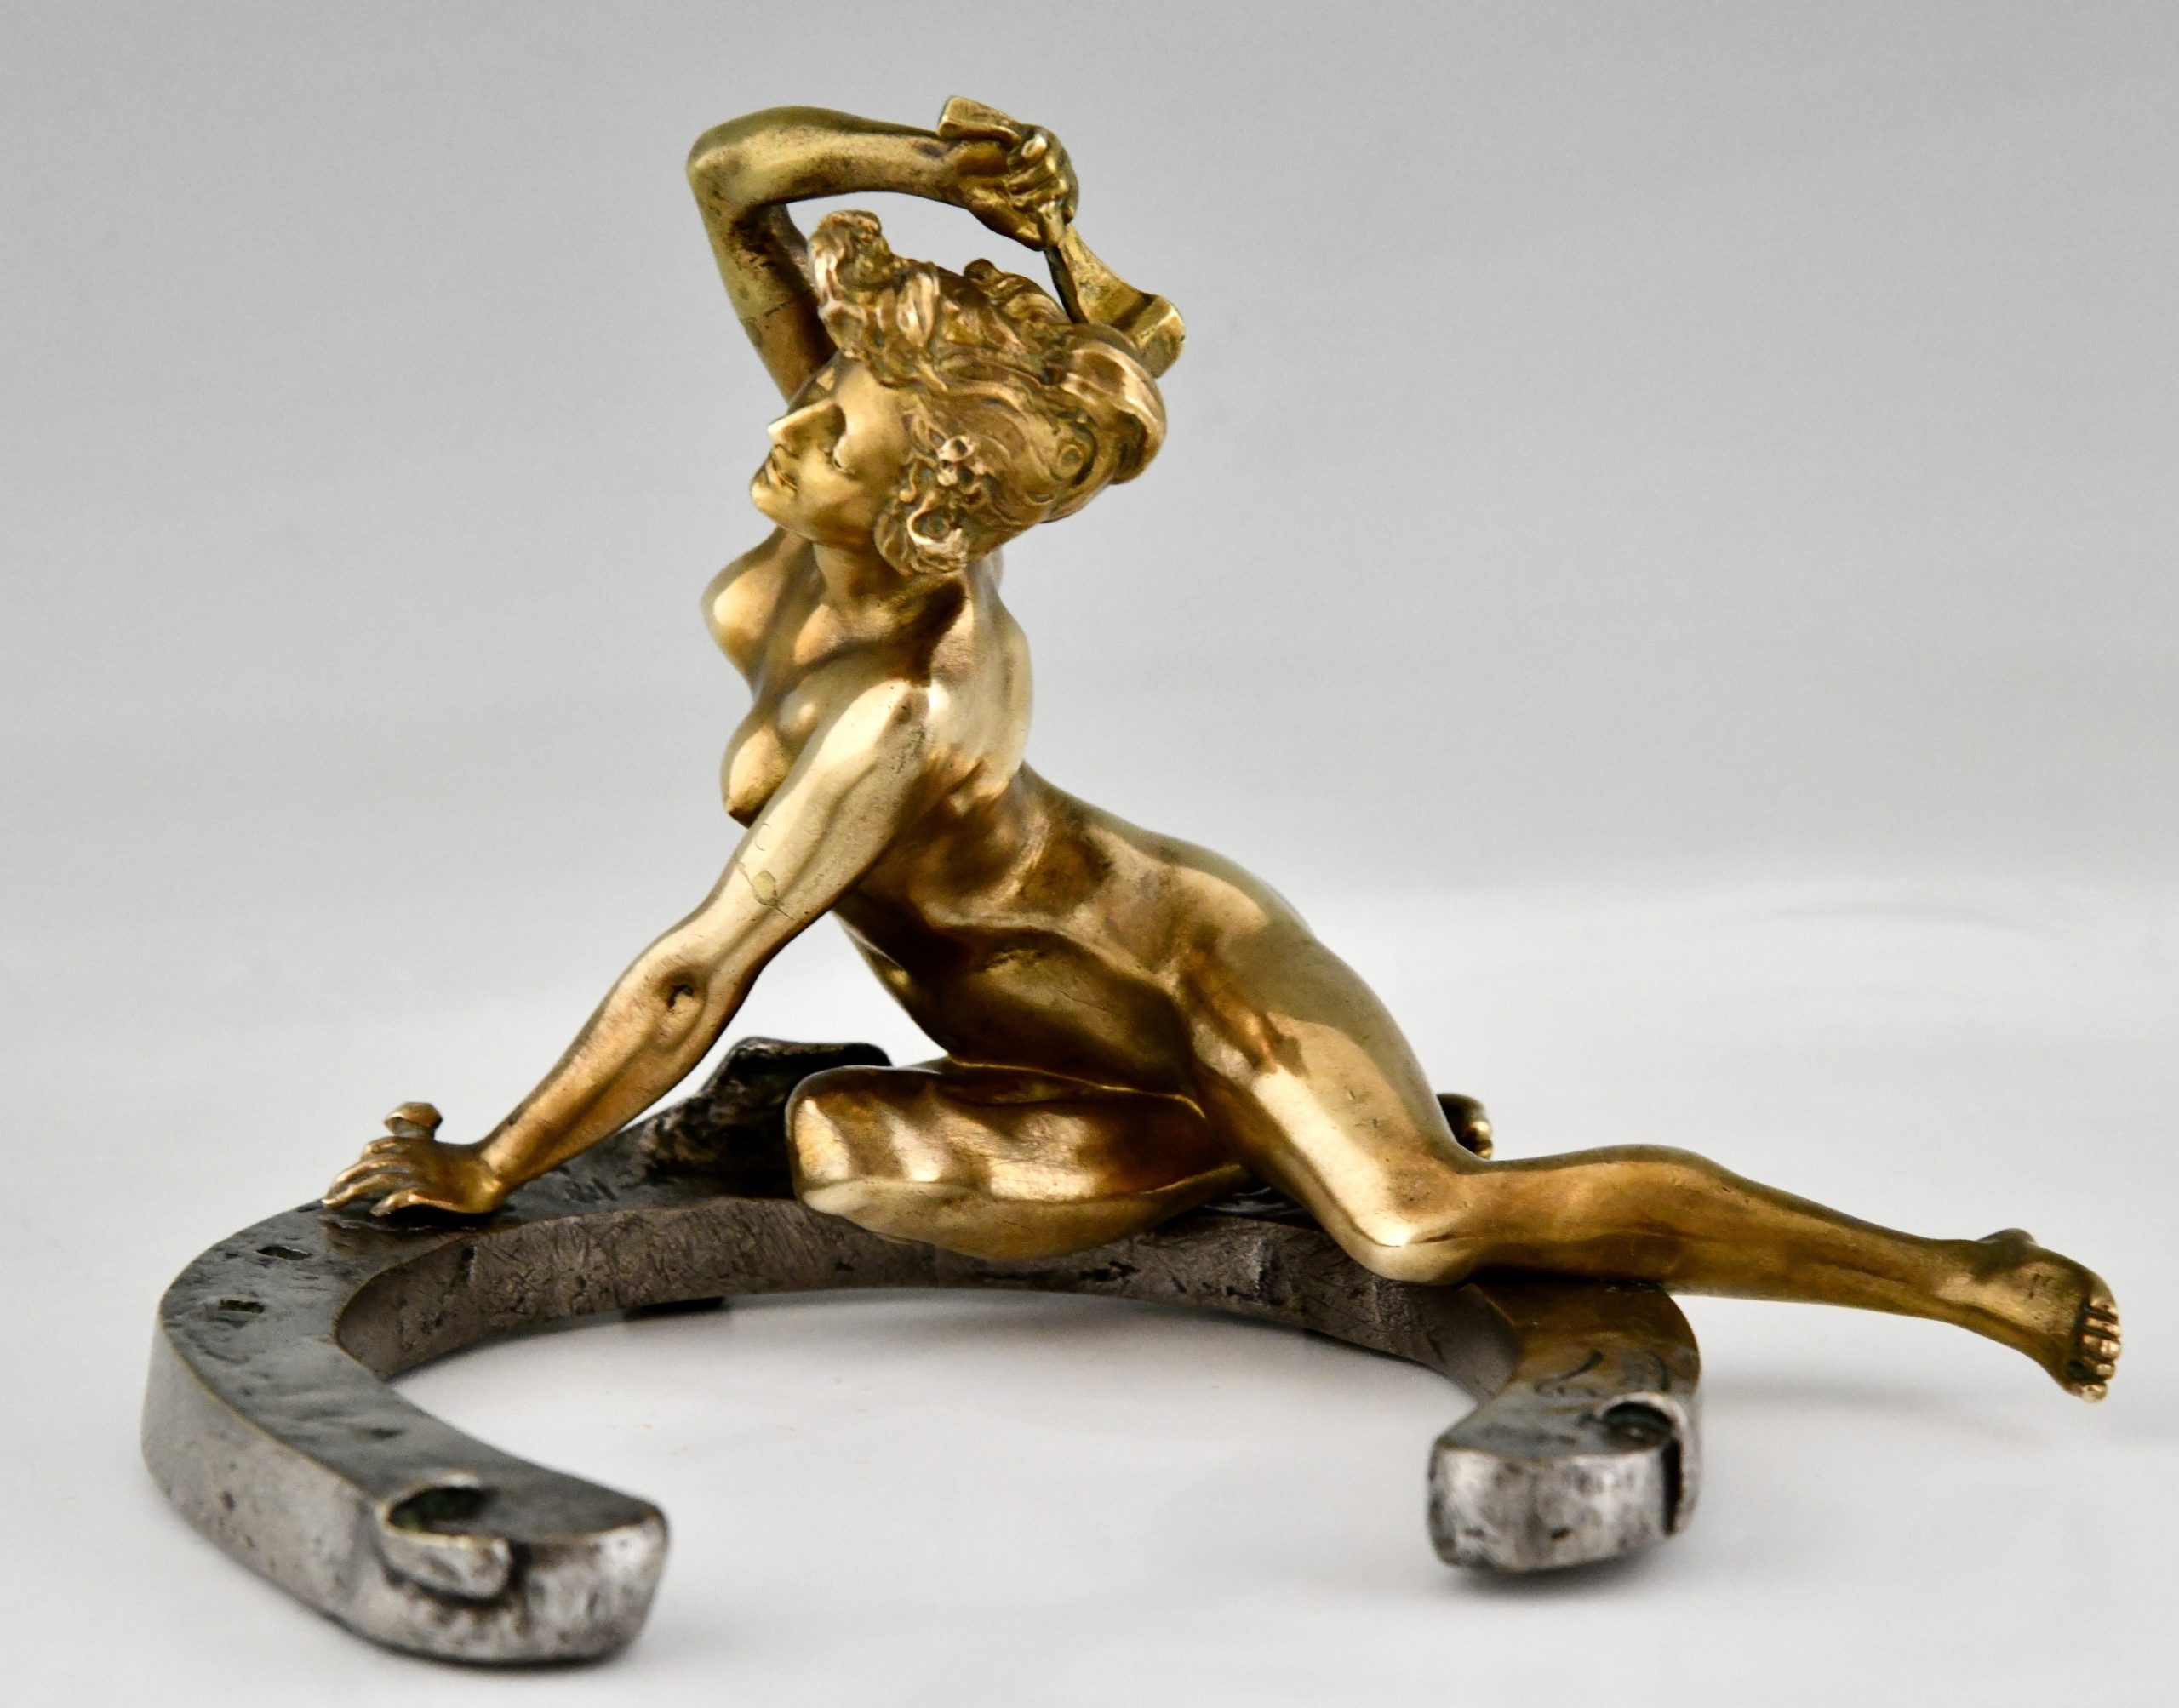 Art Nouveau bronzen sculptuur naakt op een hoefijzer - Deconamic 2560x2010